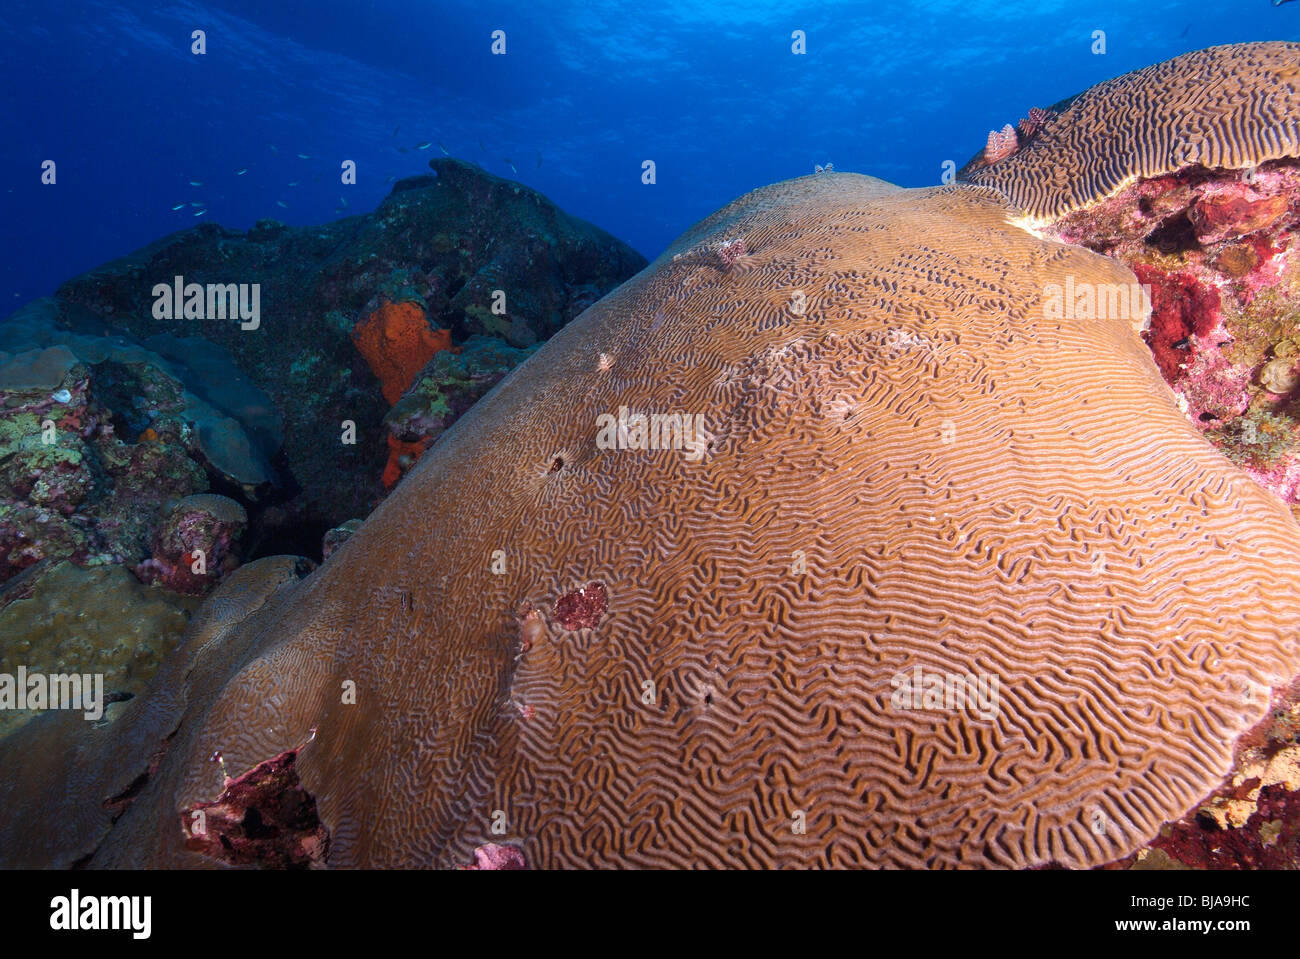 Hard Coral reef nel Golfo del Messico. Foto Stock